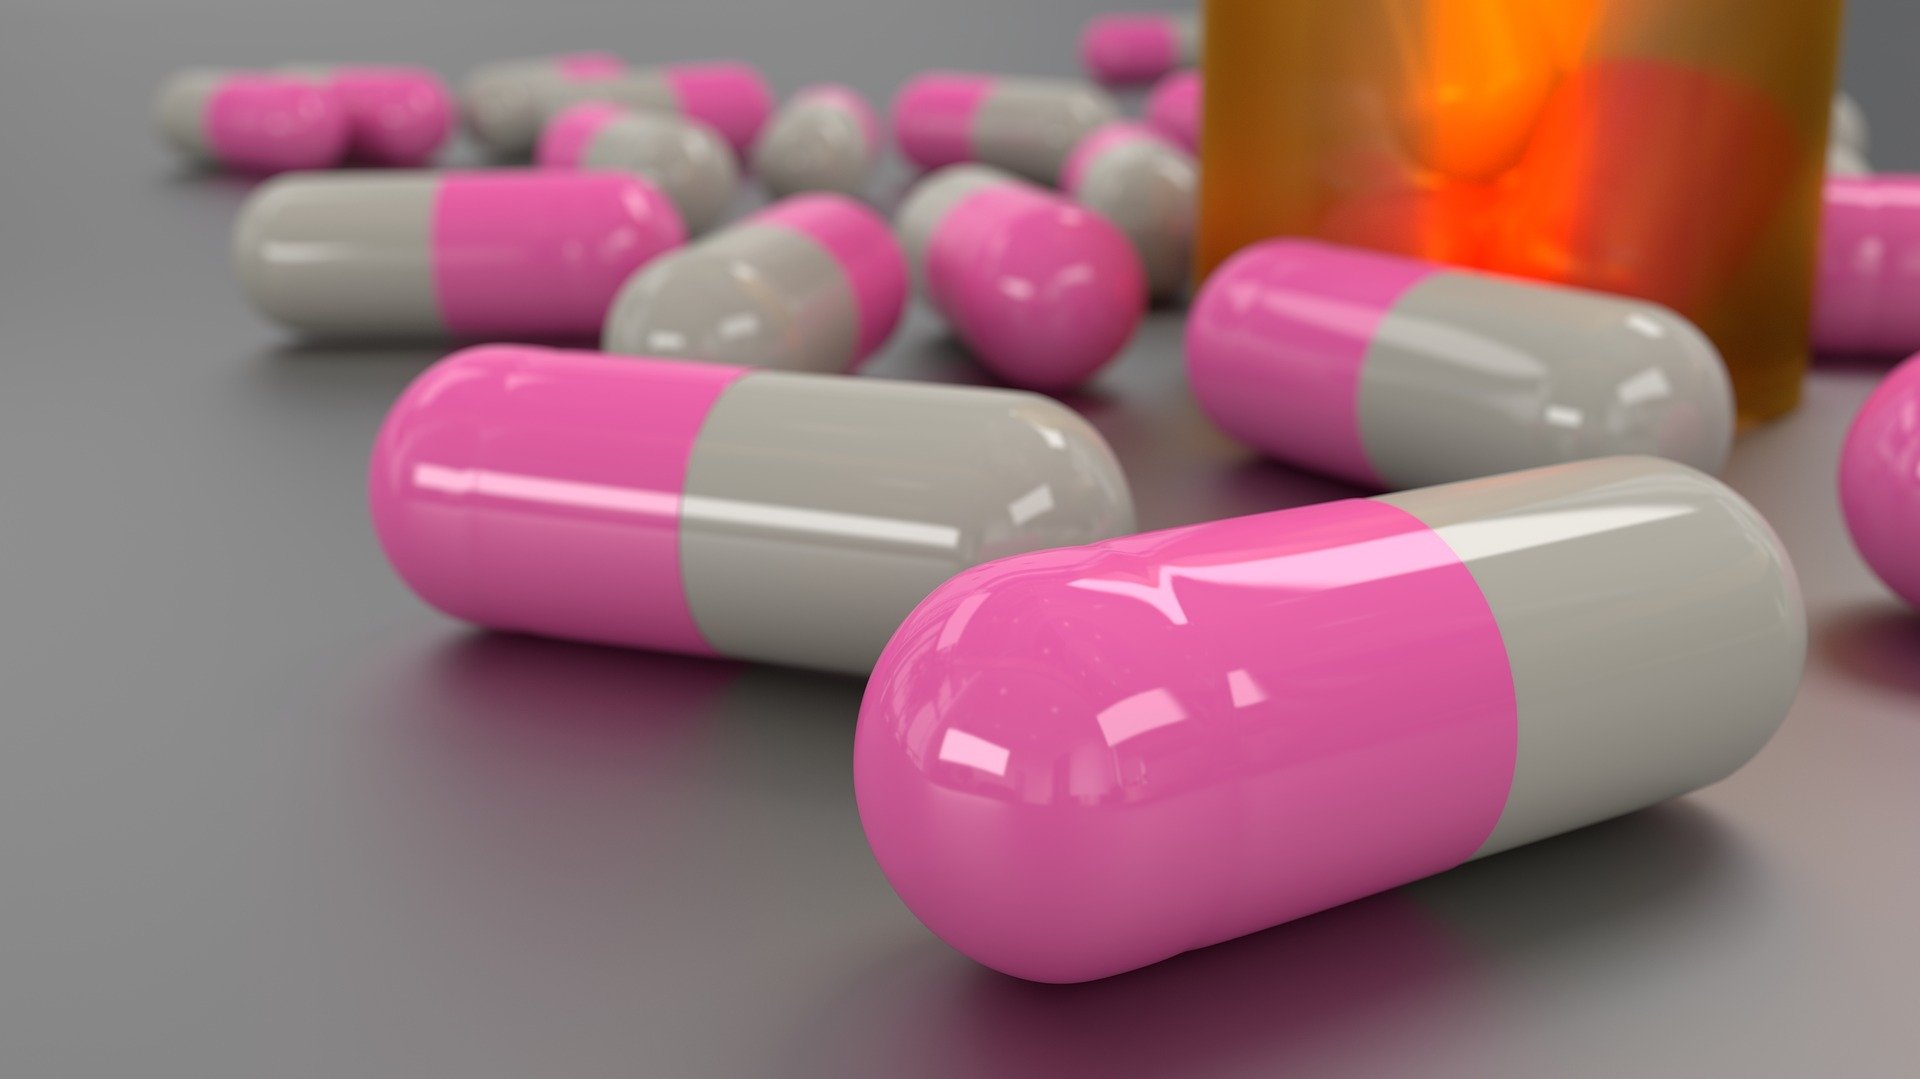 Farmaceut objasnio kad počinje djelovati antibiotik i što nikako ne napraviti kad ‘promašite’ tabletu